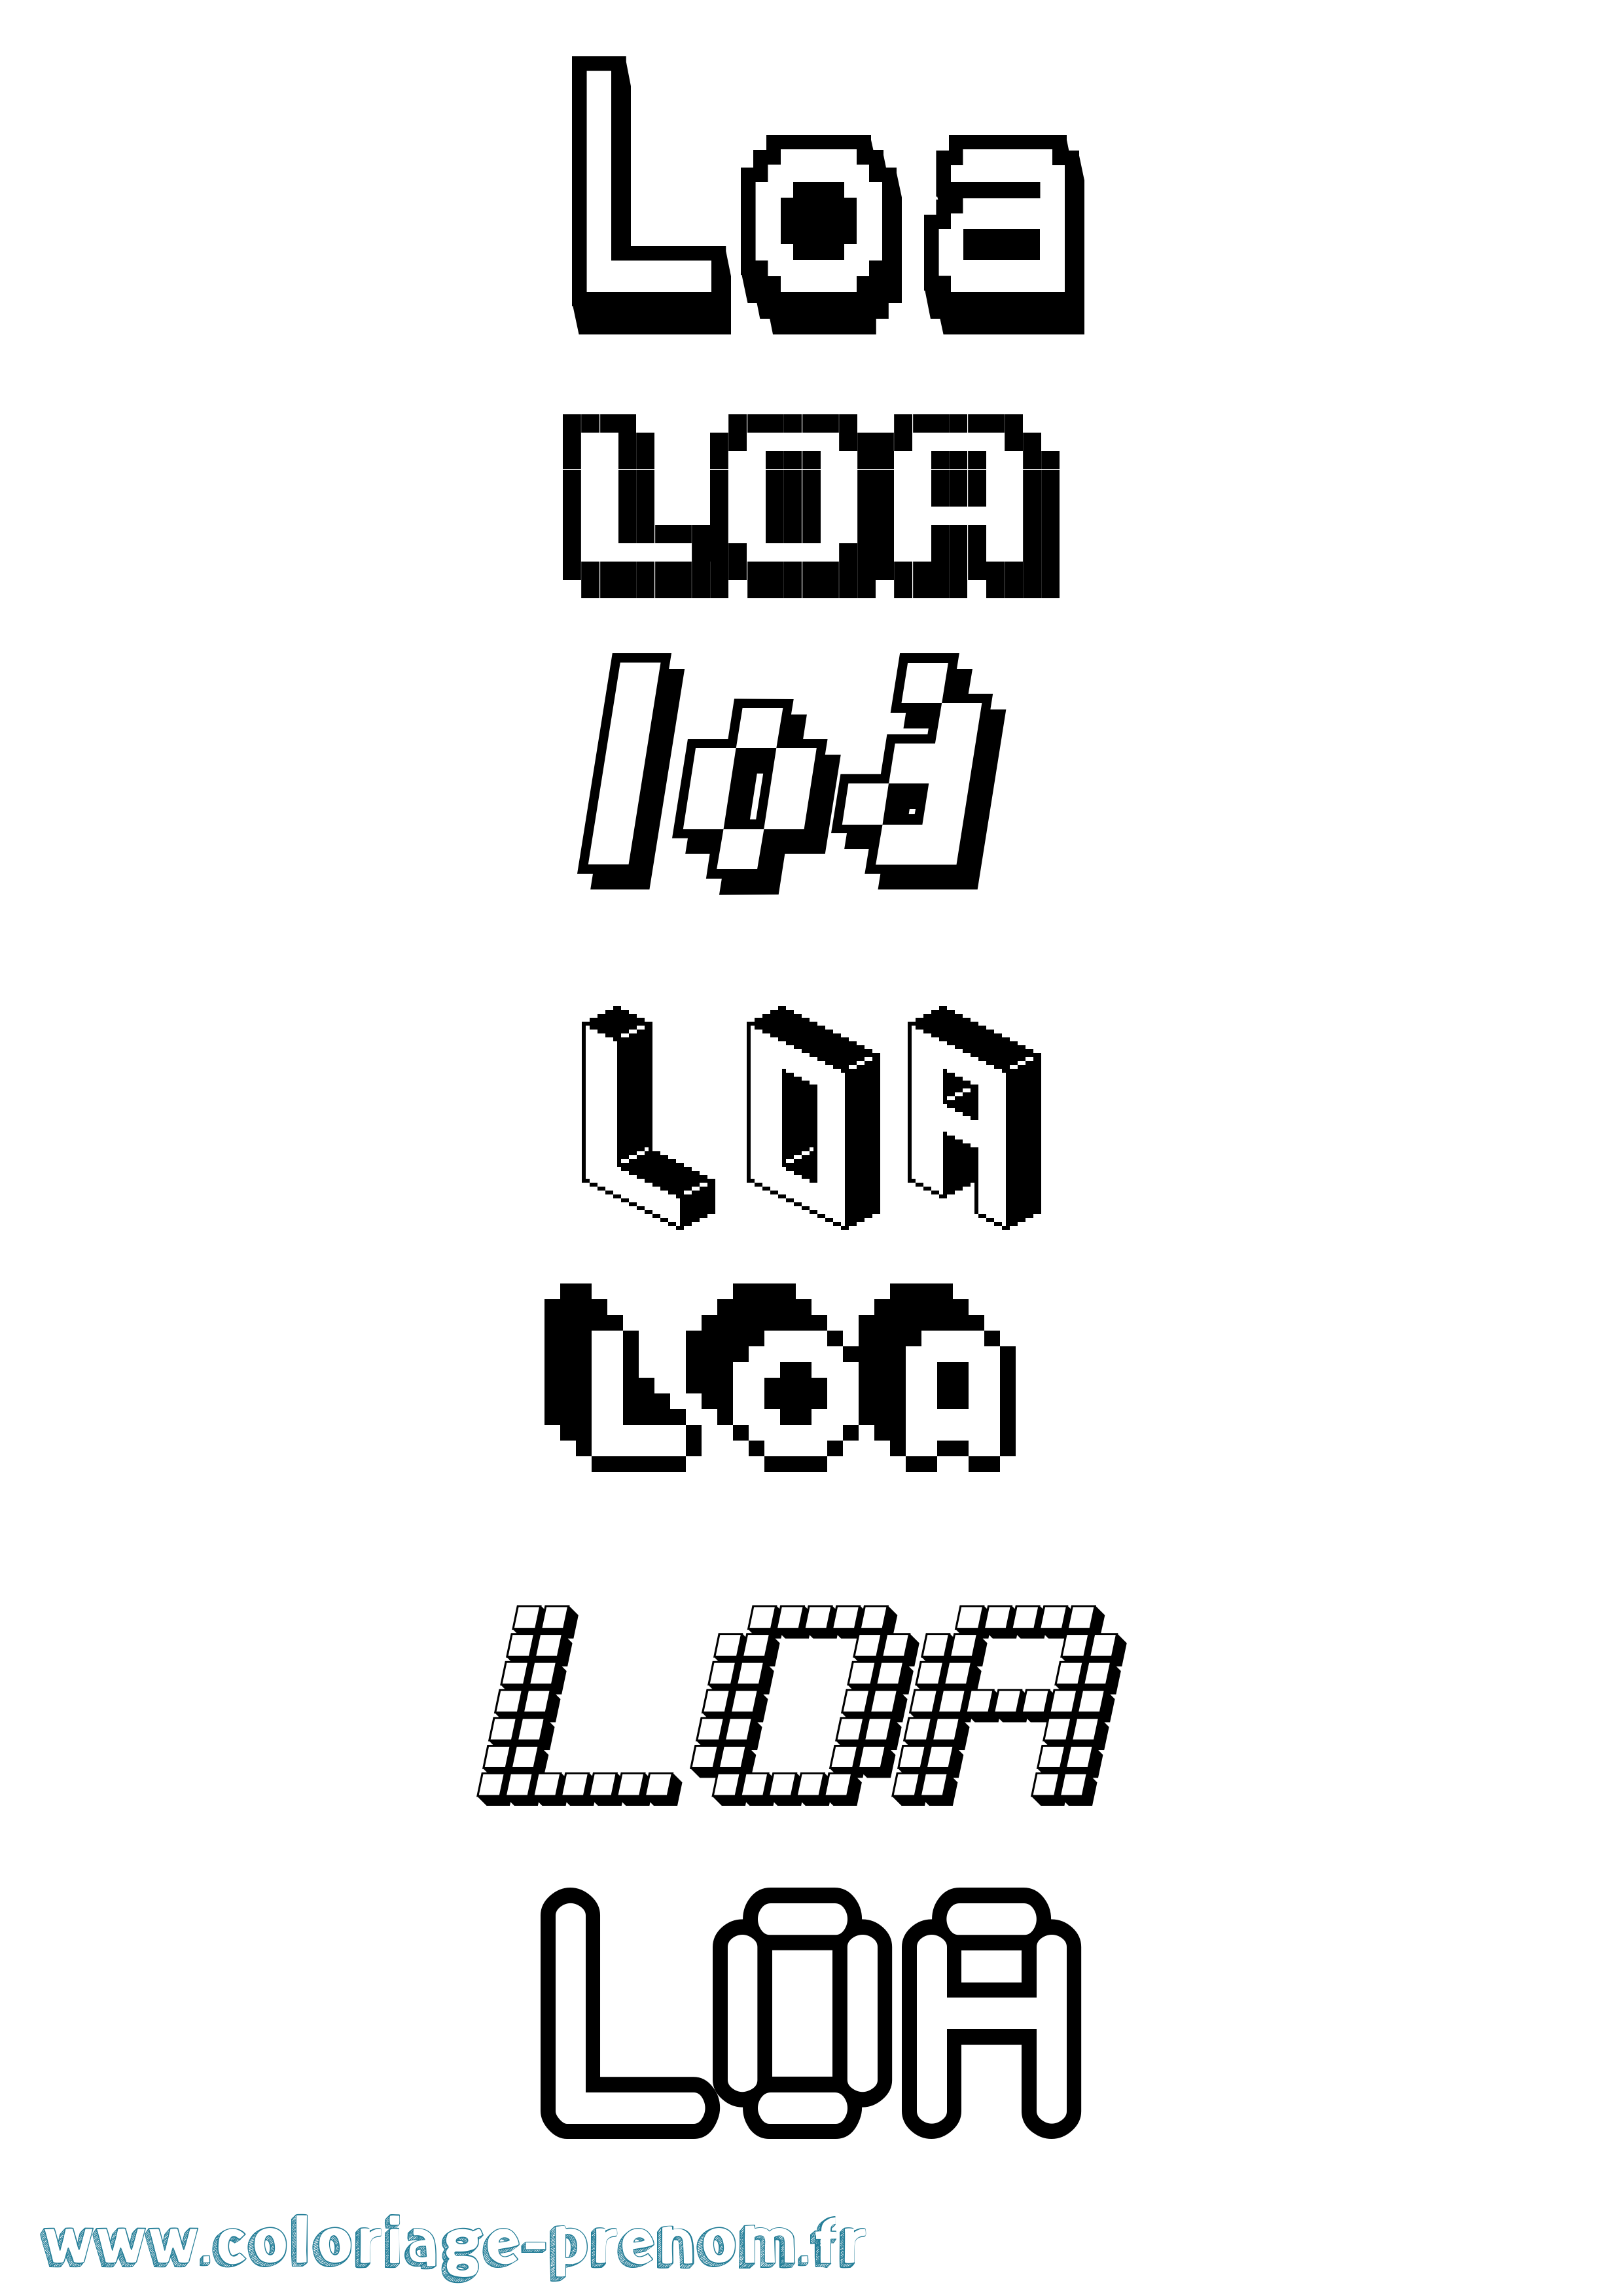 Coloriage prénom Loa Pixel